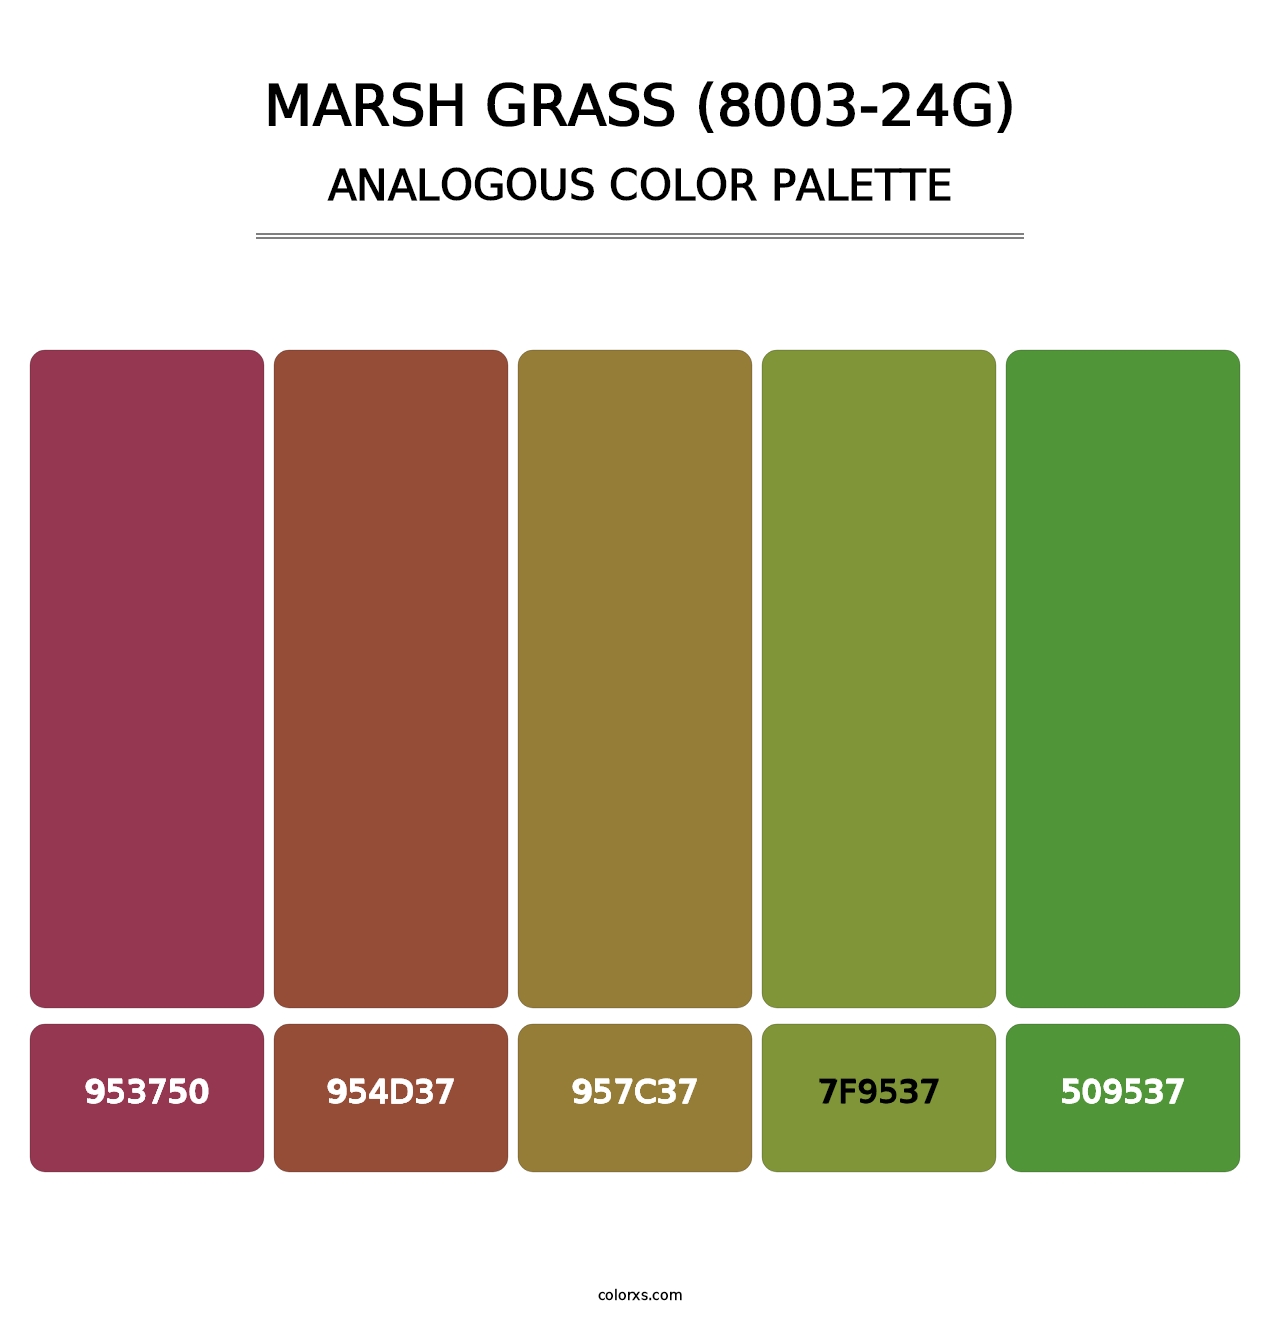 Marsh Grass (8003-24G) - Analogous Color Palette